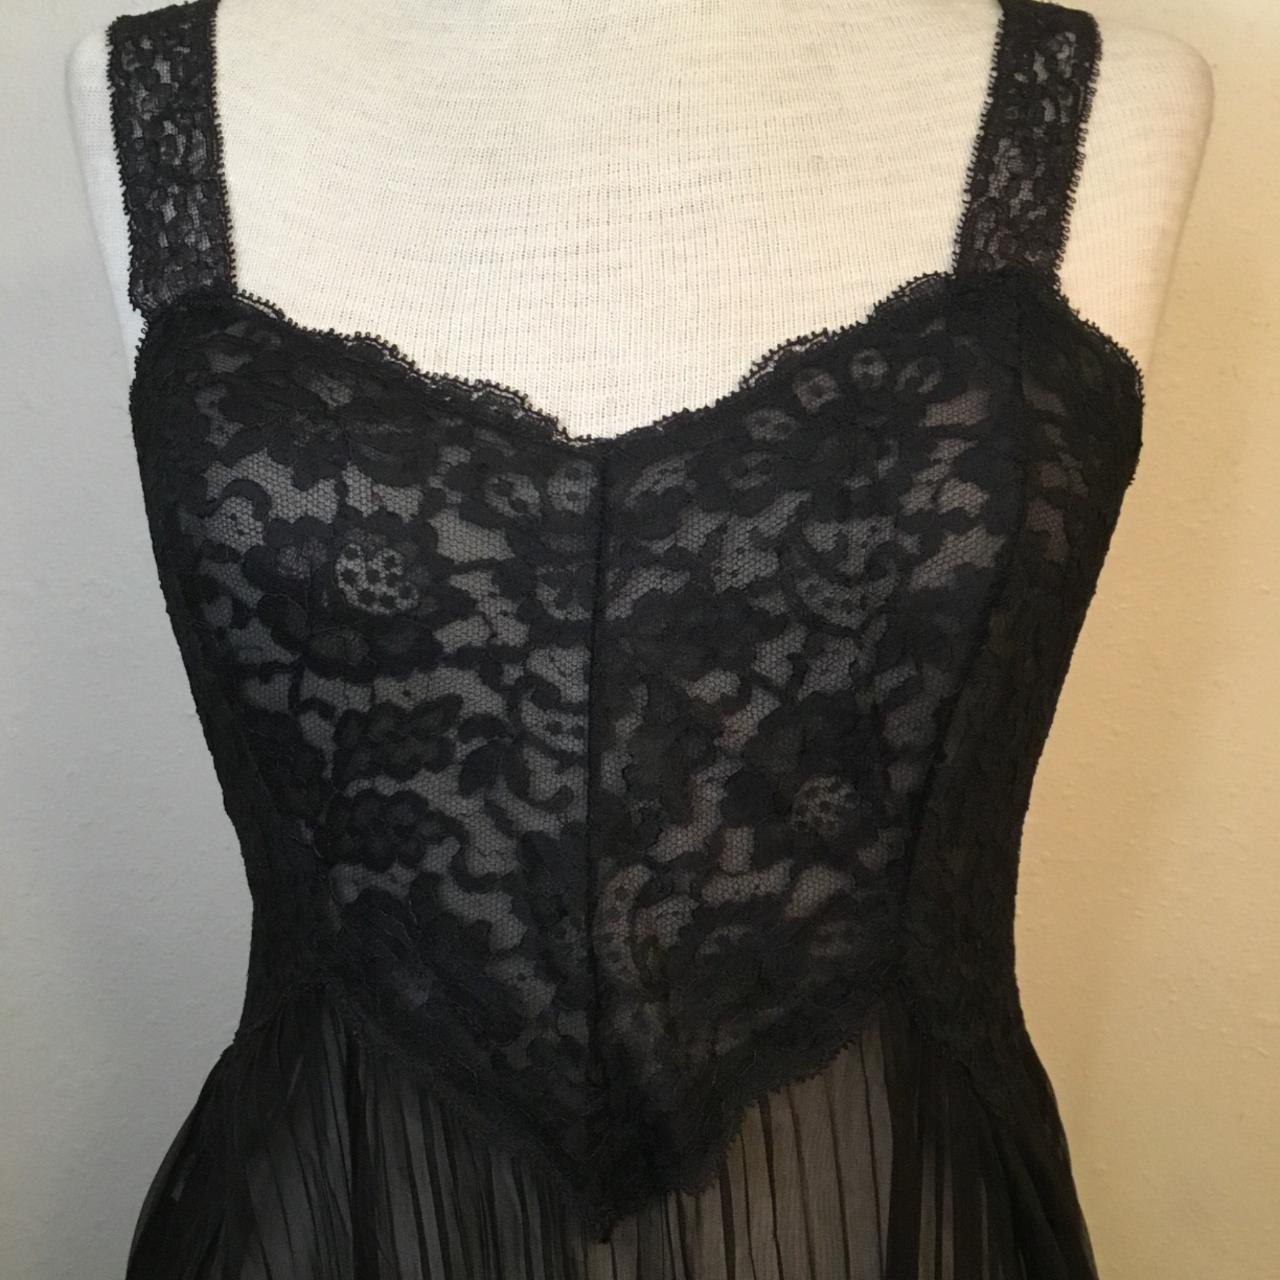 Vintage Michelene Nylon Gown Size 32 Black Sheer... - Depop